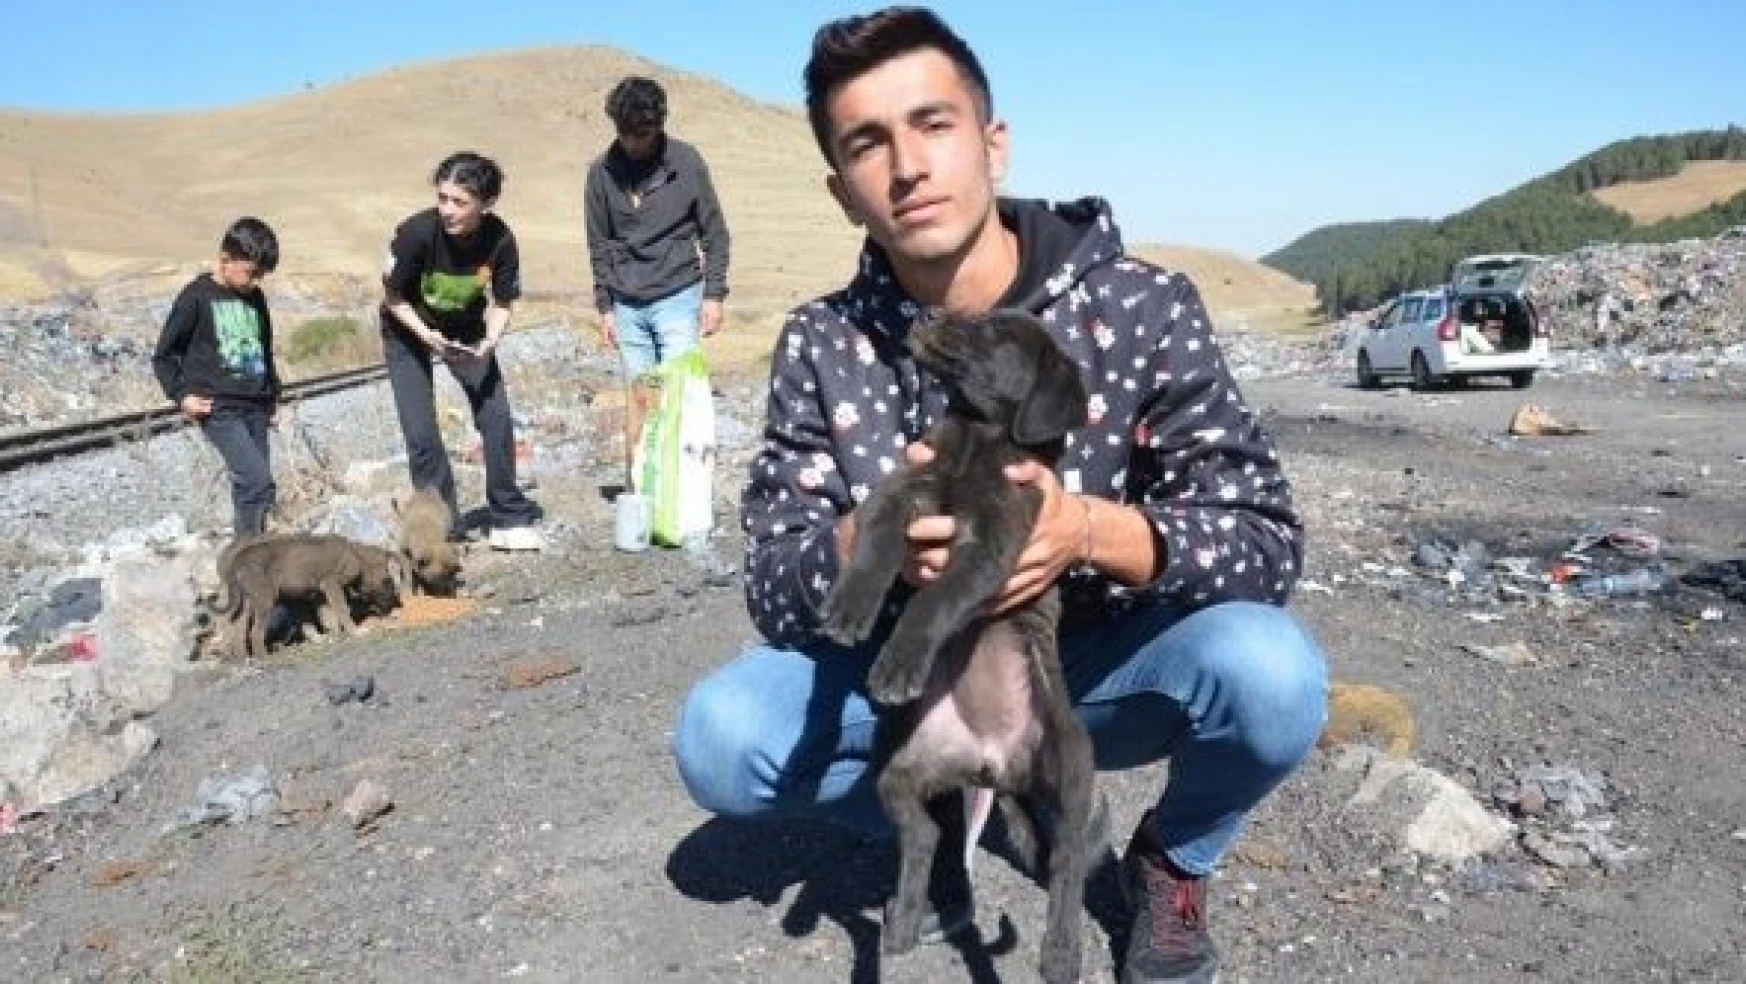 Doğu Anadolu'da Dünya Hayvanları Koruma Günü etkinlikleri düzenlendi